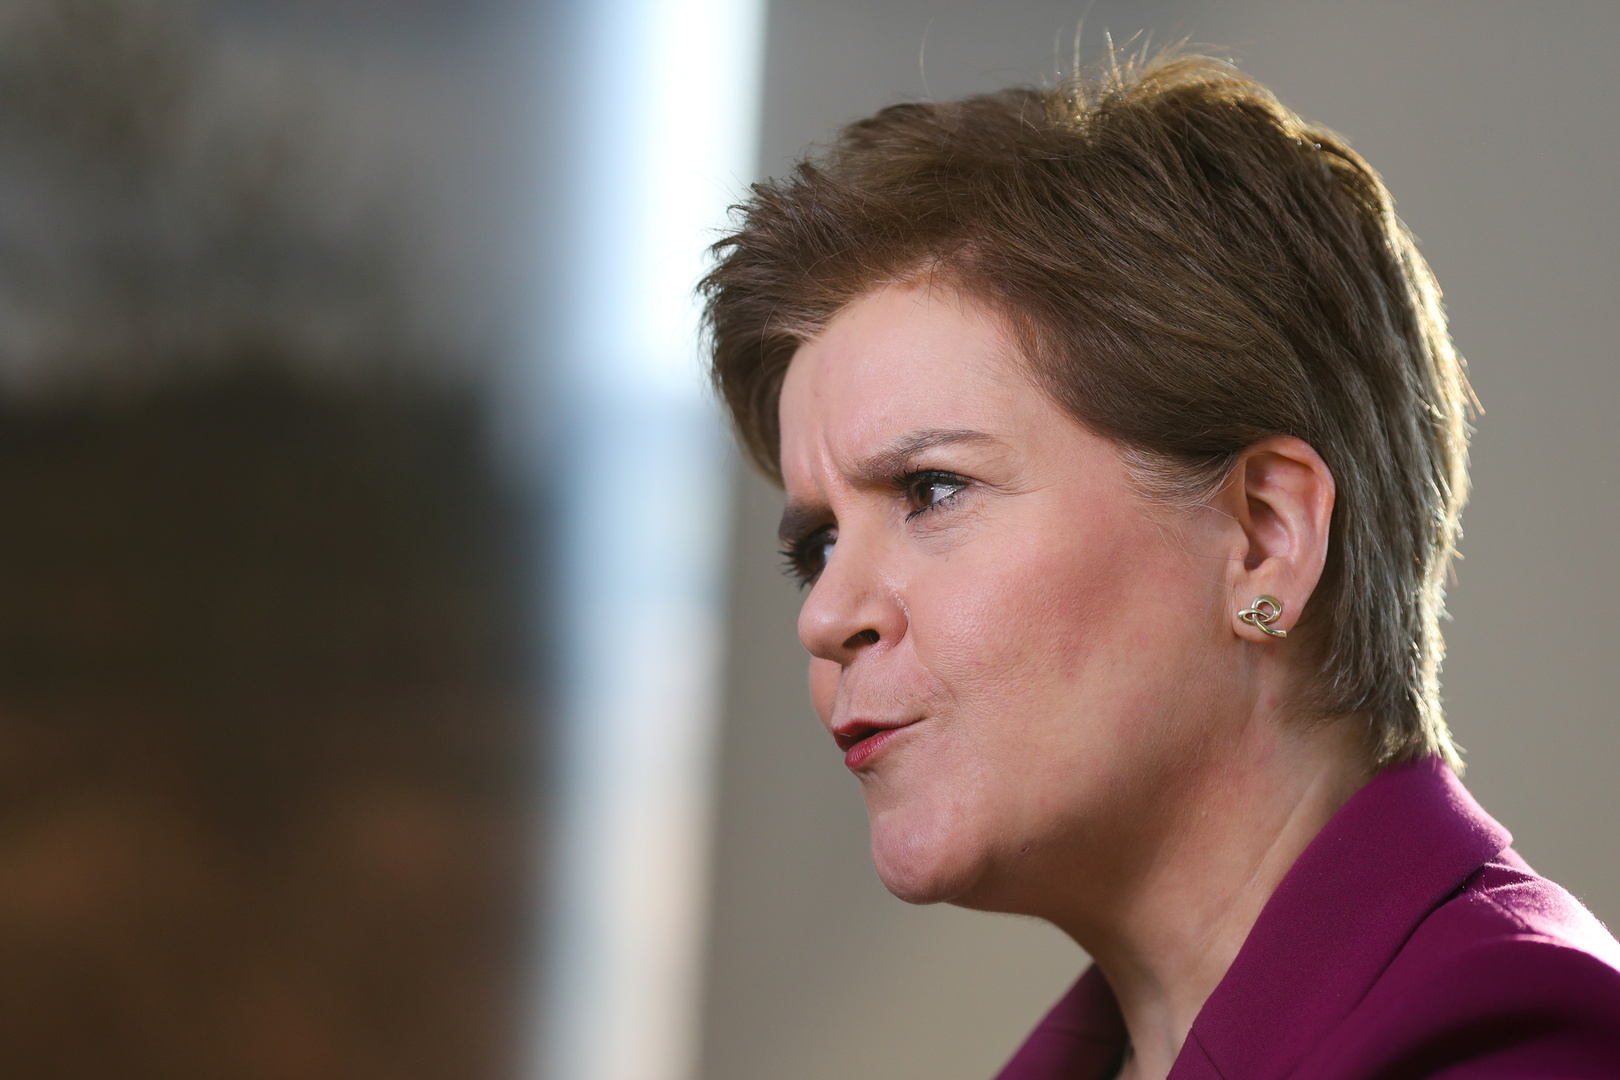 اسكتلندا وويلز تطالبان بتشديد قواعد الحجر الصحي